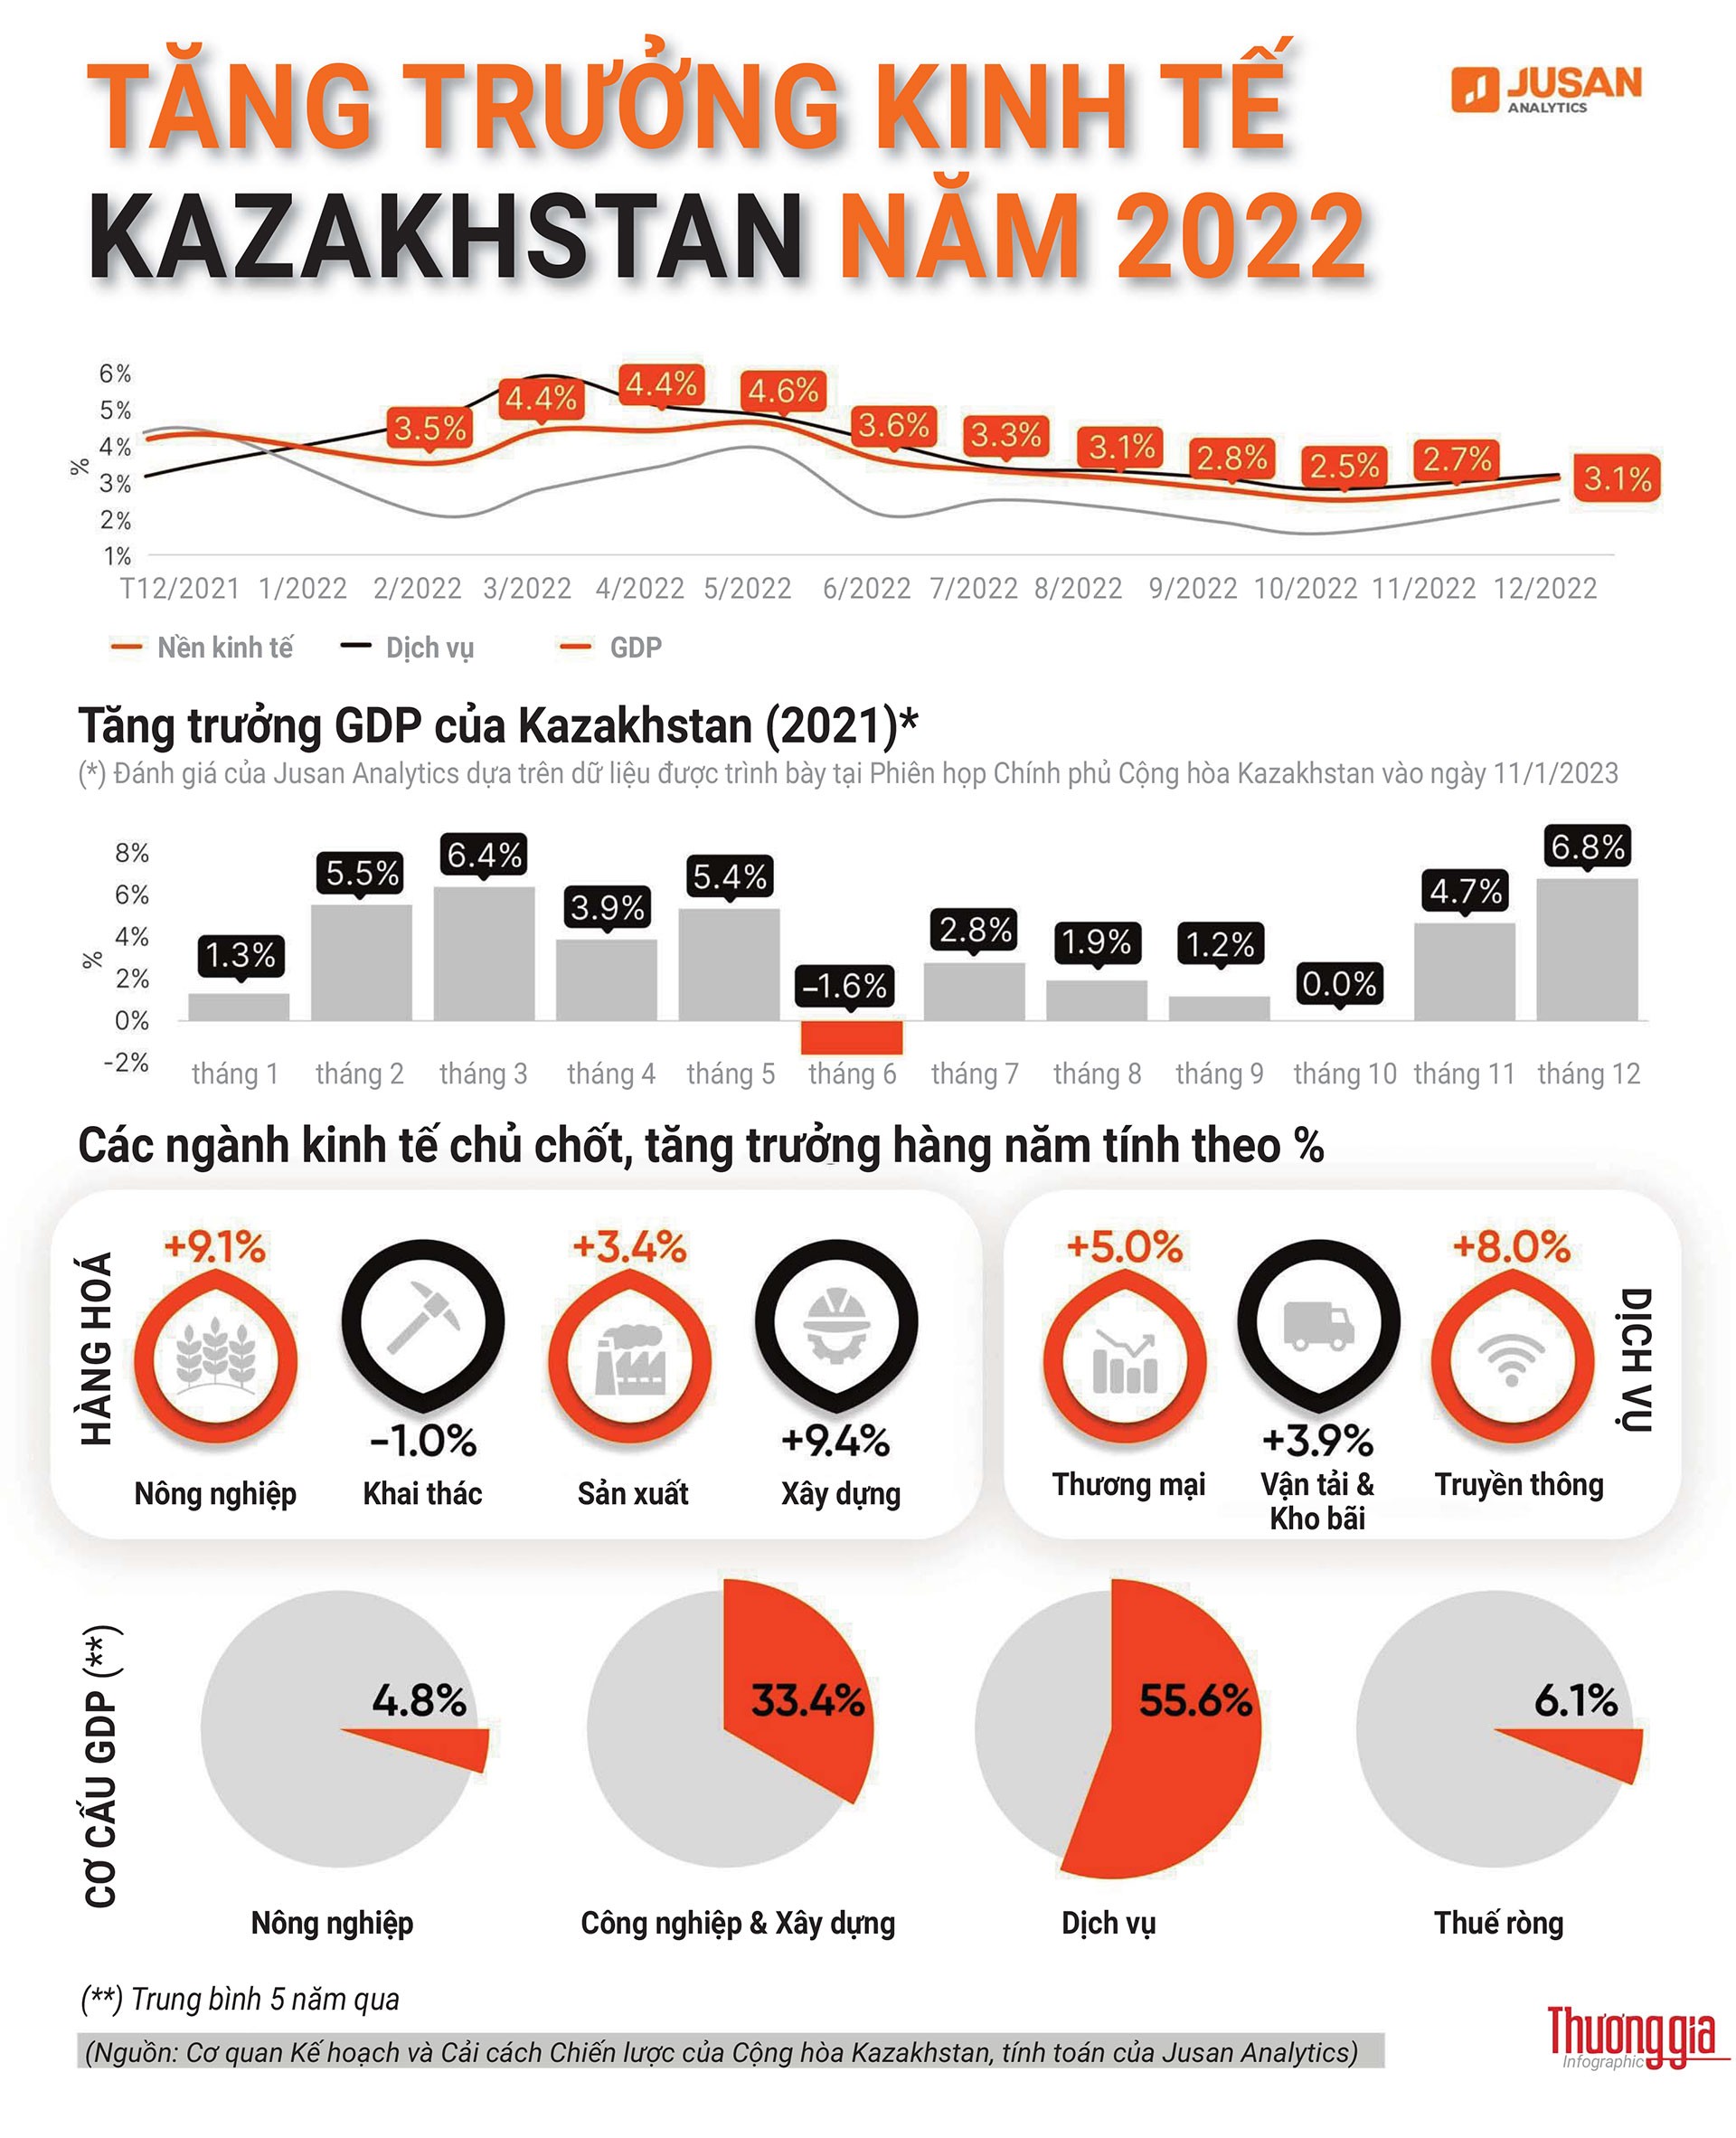 Kinh tế Kazakhstan